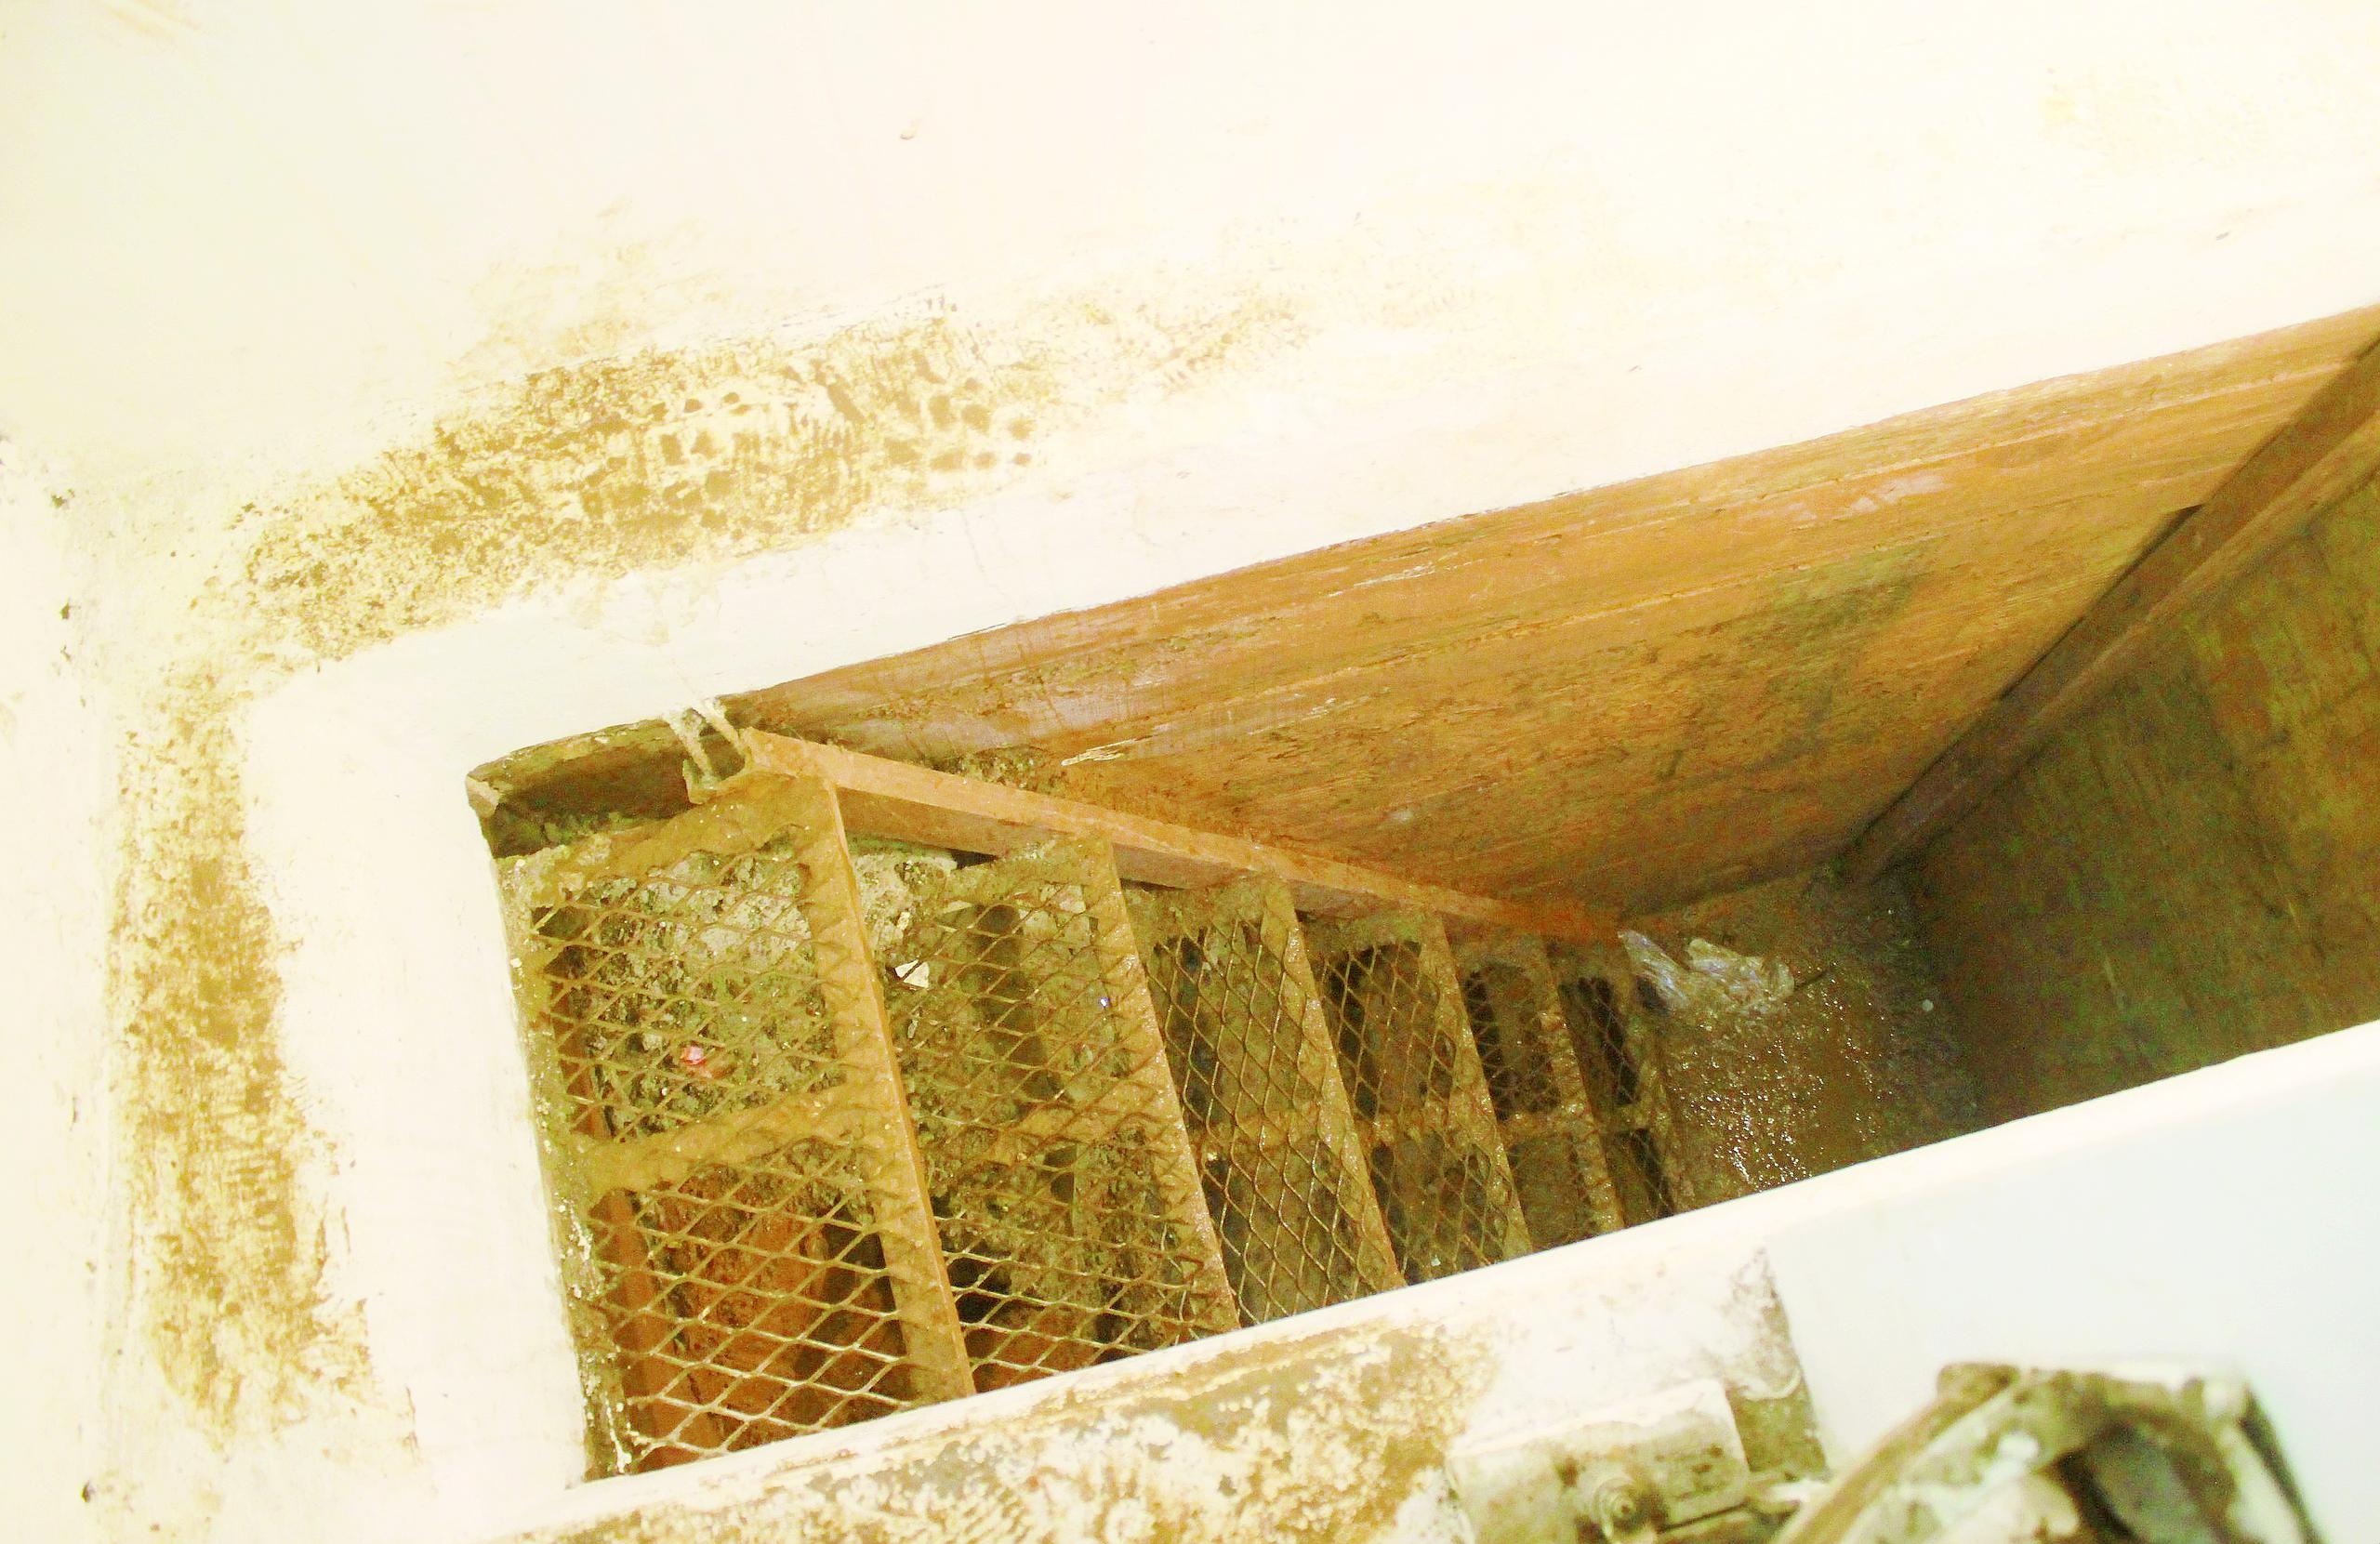 Entre las modificaciones, se clausuró el ducto de la bañera que iba hacia el túnel por donde huyó “El Chapo” y se eliminaron las cámaras que vigilaban todos los ángulos del exterior.